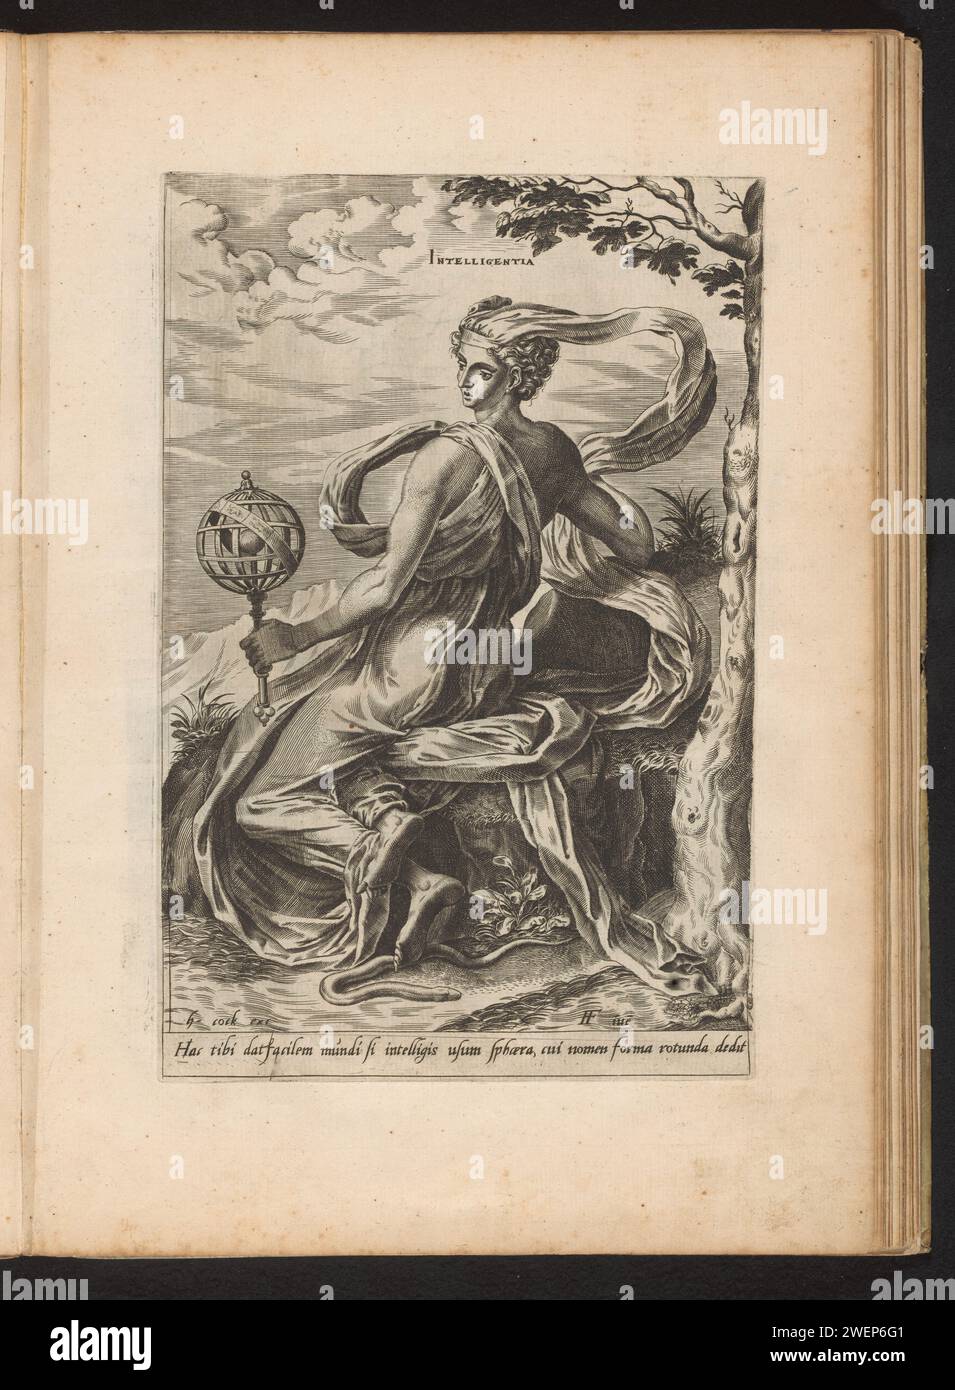 Intelligenz, Cornelis Cort, nach frans Blume (1), 1560 Druck die Personifikation der Intelligenz ist mit einem Arillarium in der Hand unter einem Baum bedeckt. Eine Schlange, Symbol für den Verstand, windet sich zu Füßen. Dieser Ausdruck ist Teil eines Albums. Papierstich Intellekt, Intelligenz; 'Intelletto', 'Intelligenza' (Ripa) (+ abstraktes Konzept dargestellt durch weibliche Figur). armillarsphäre, Skelett Himmelskugel Stockfoto